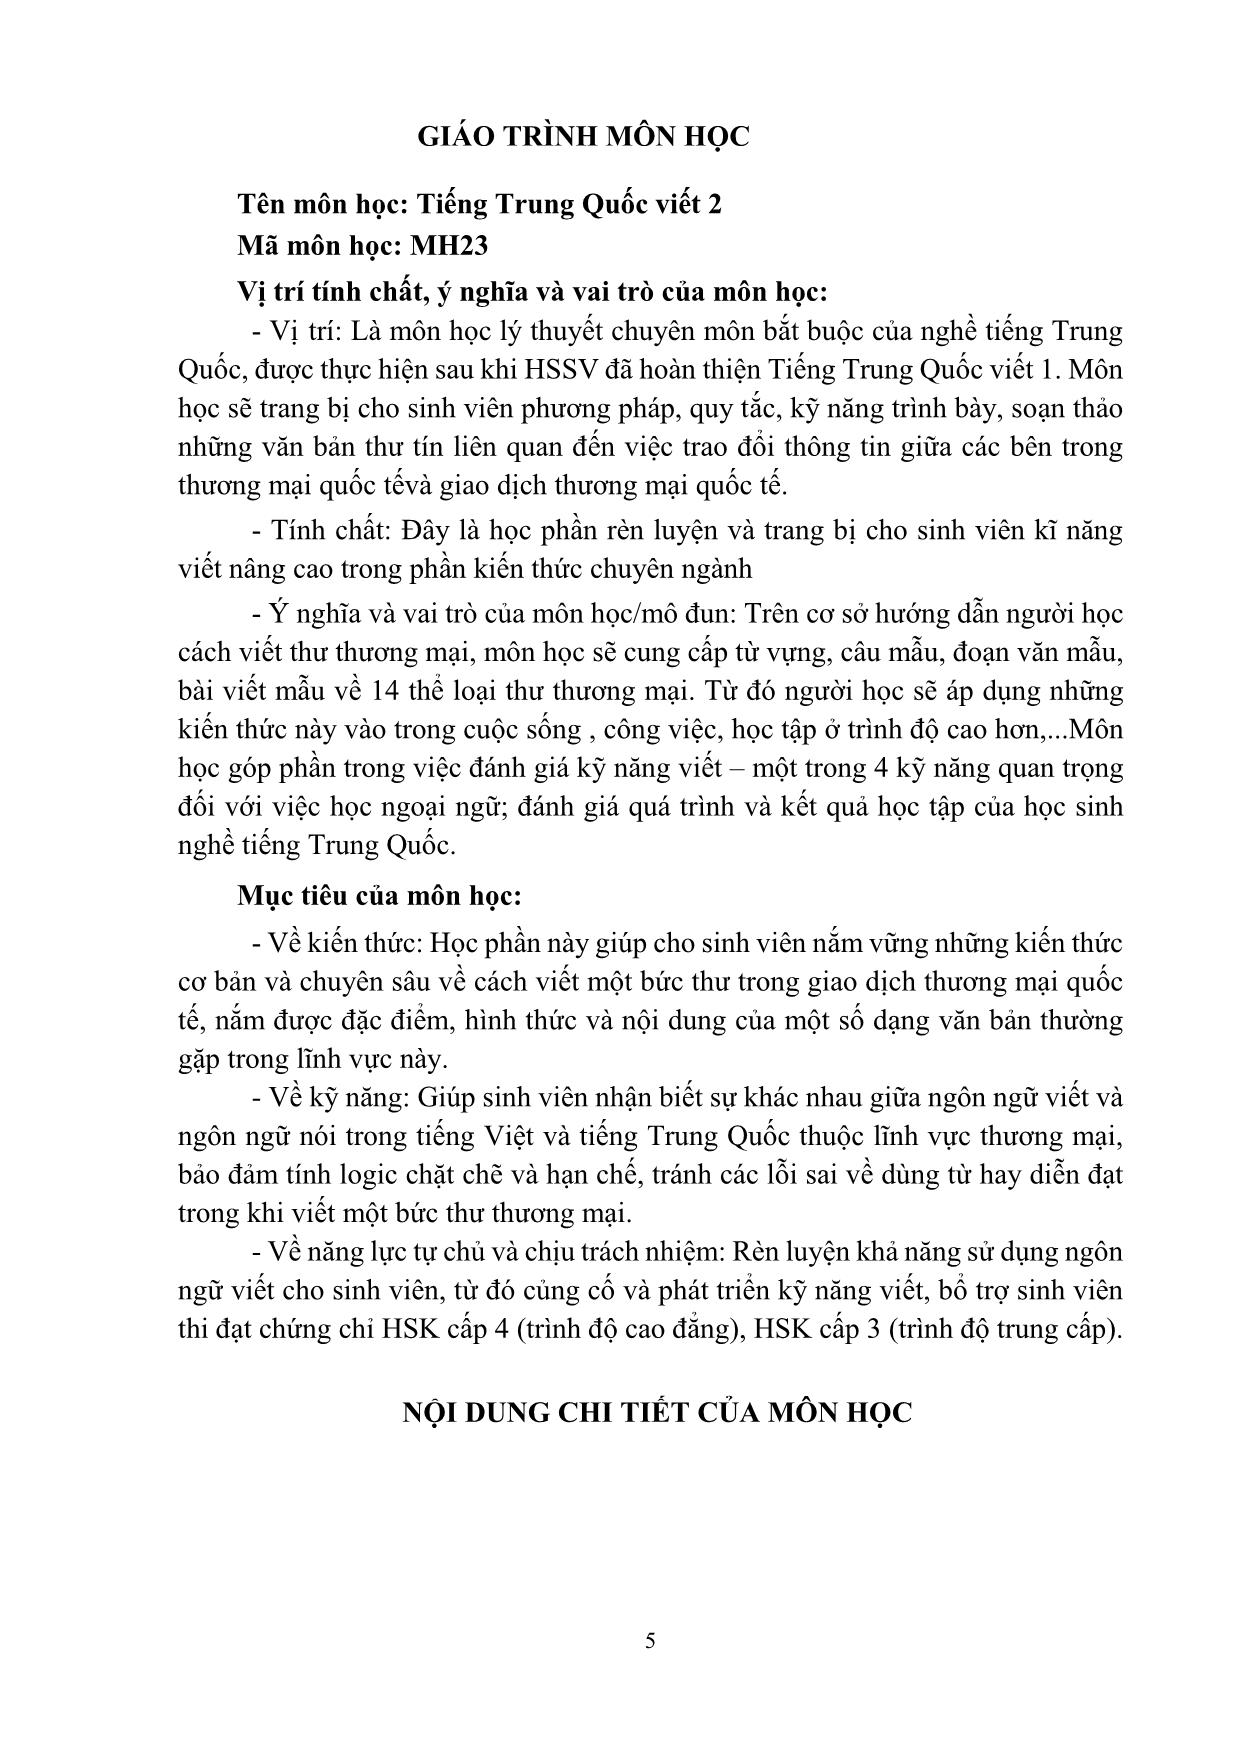 Giáo trình Tiếng Trung Quốc viết II trang 5